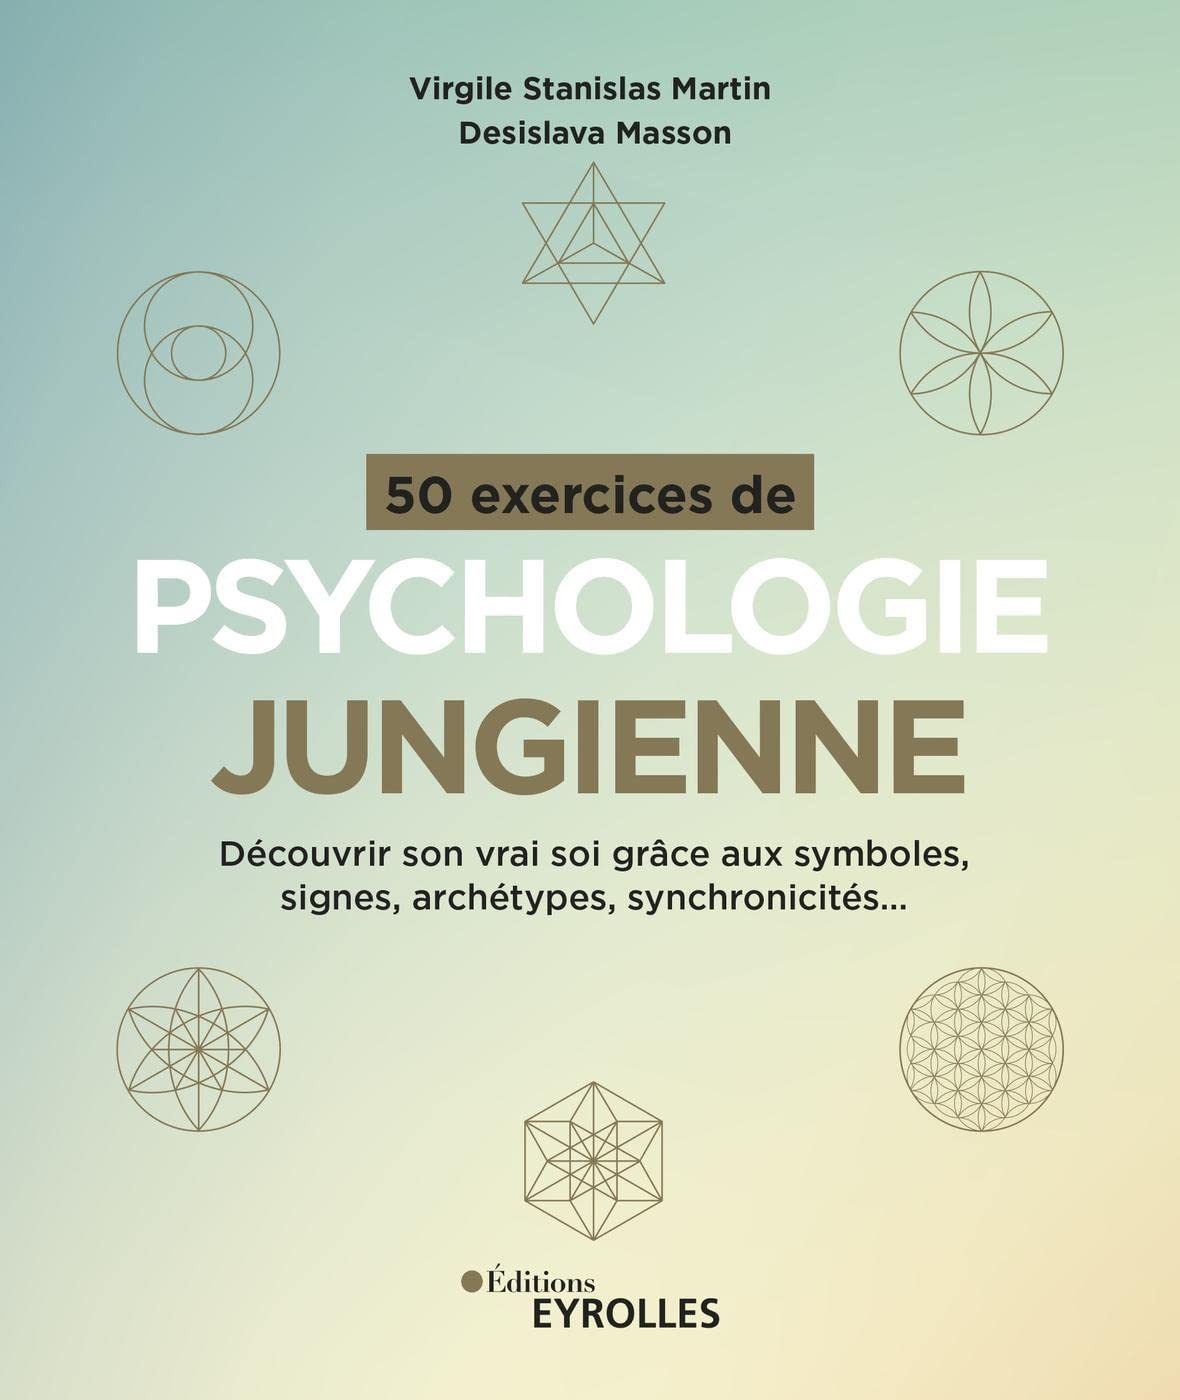 50 exercices de psychologie jungienne : découvrir son vrai soi grâce aux symboles, signes, archétype